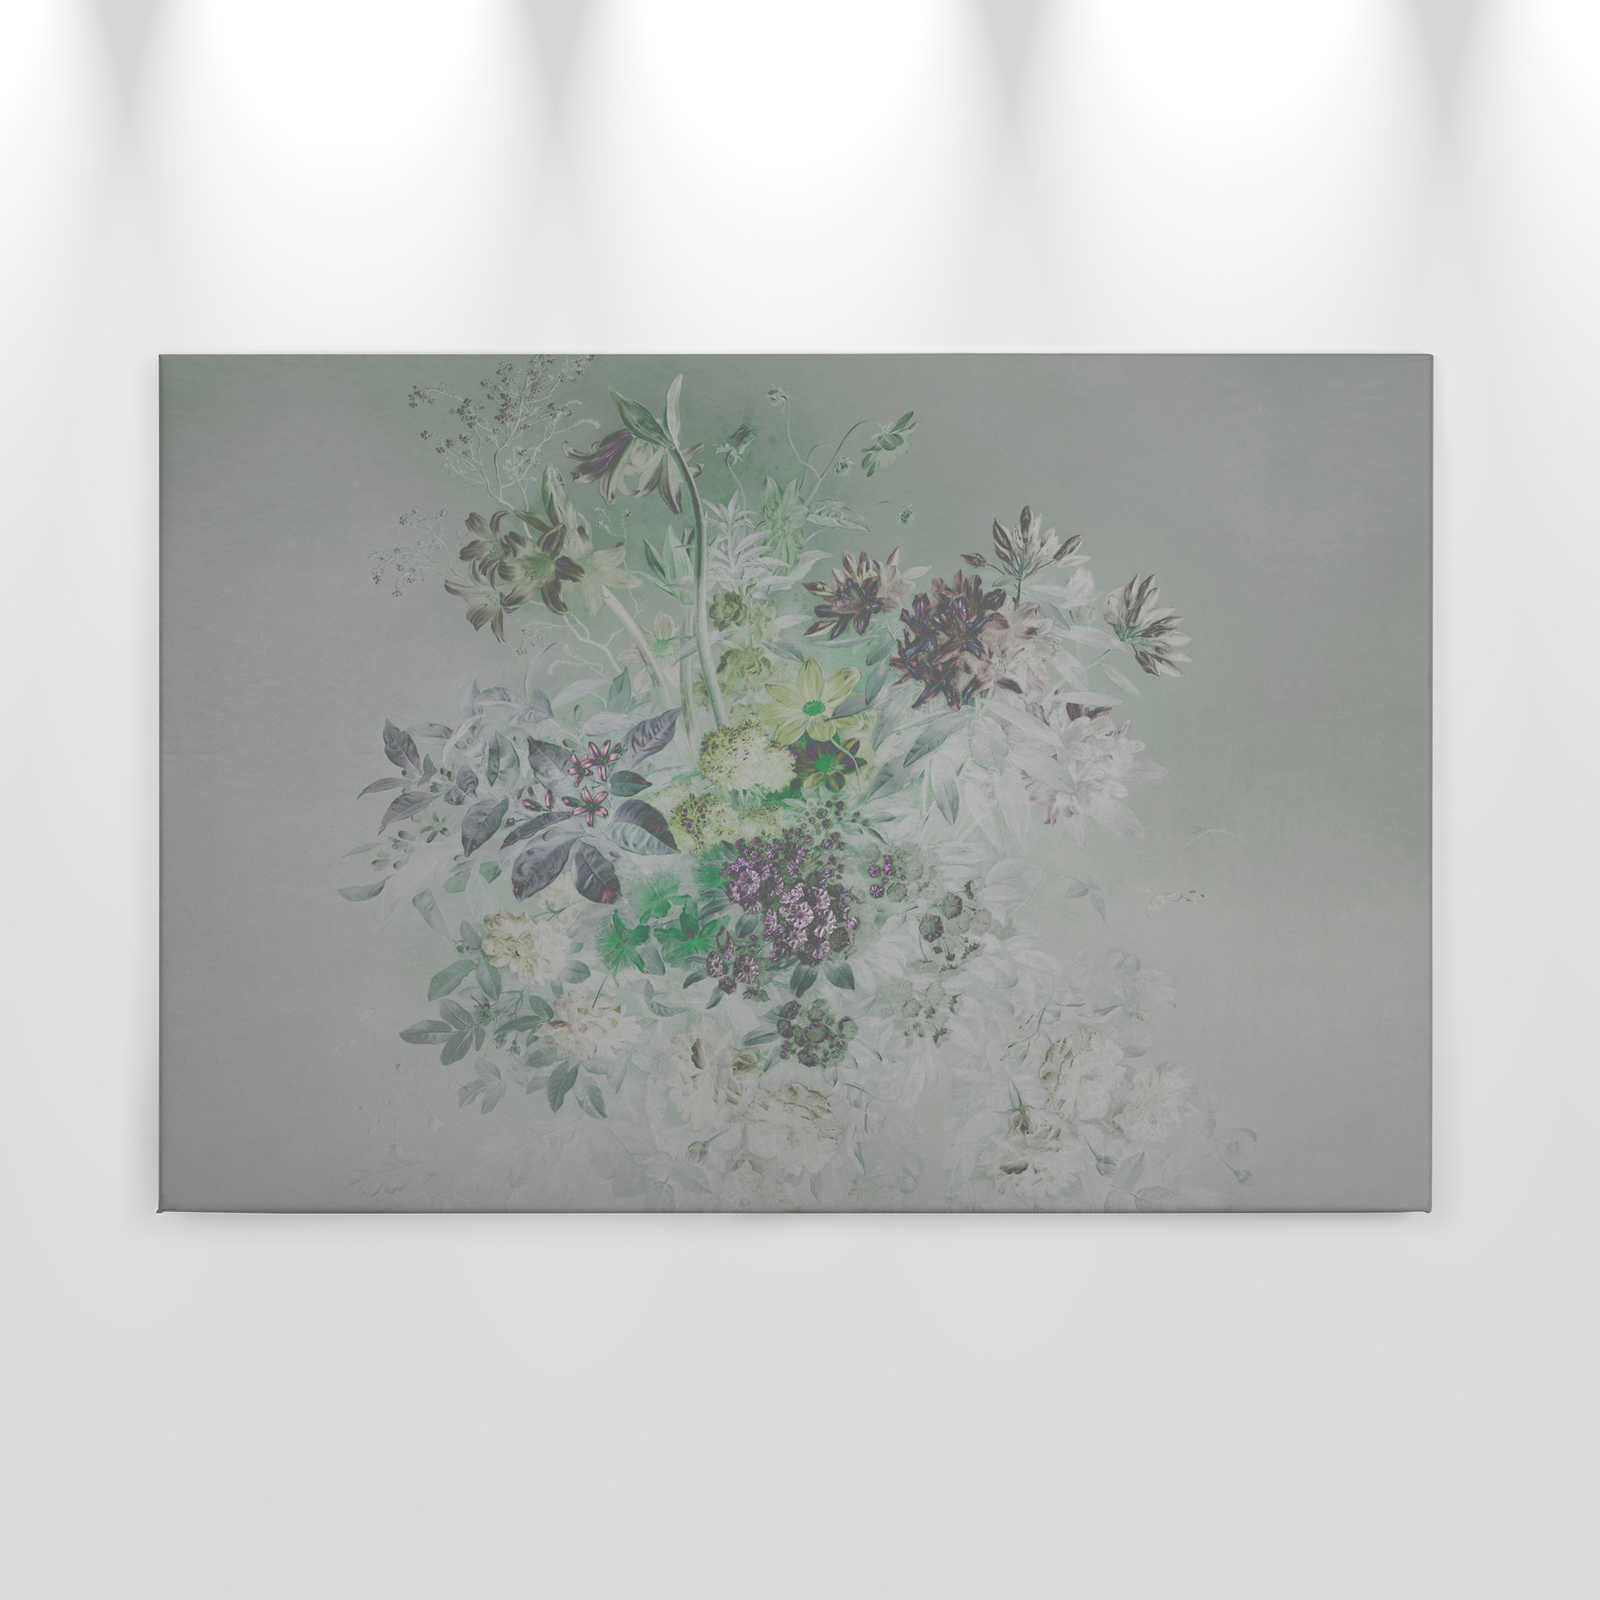             Leinwandbild Blumen mit Vintage Design – 0,90 m x 0,60 m
        